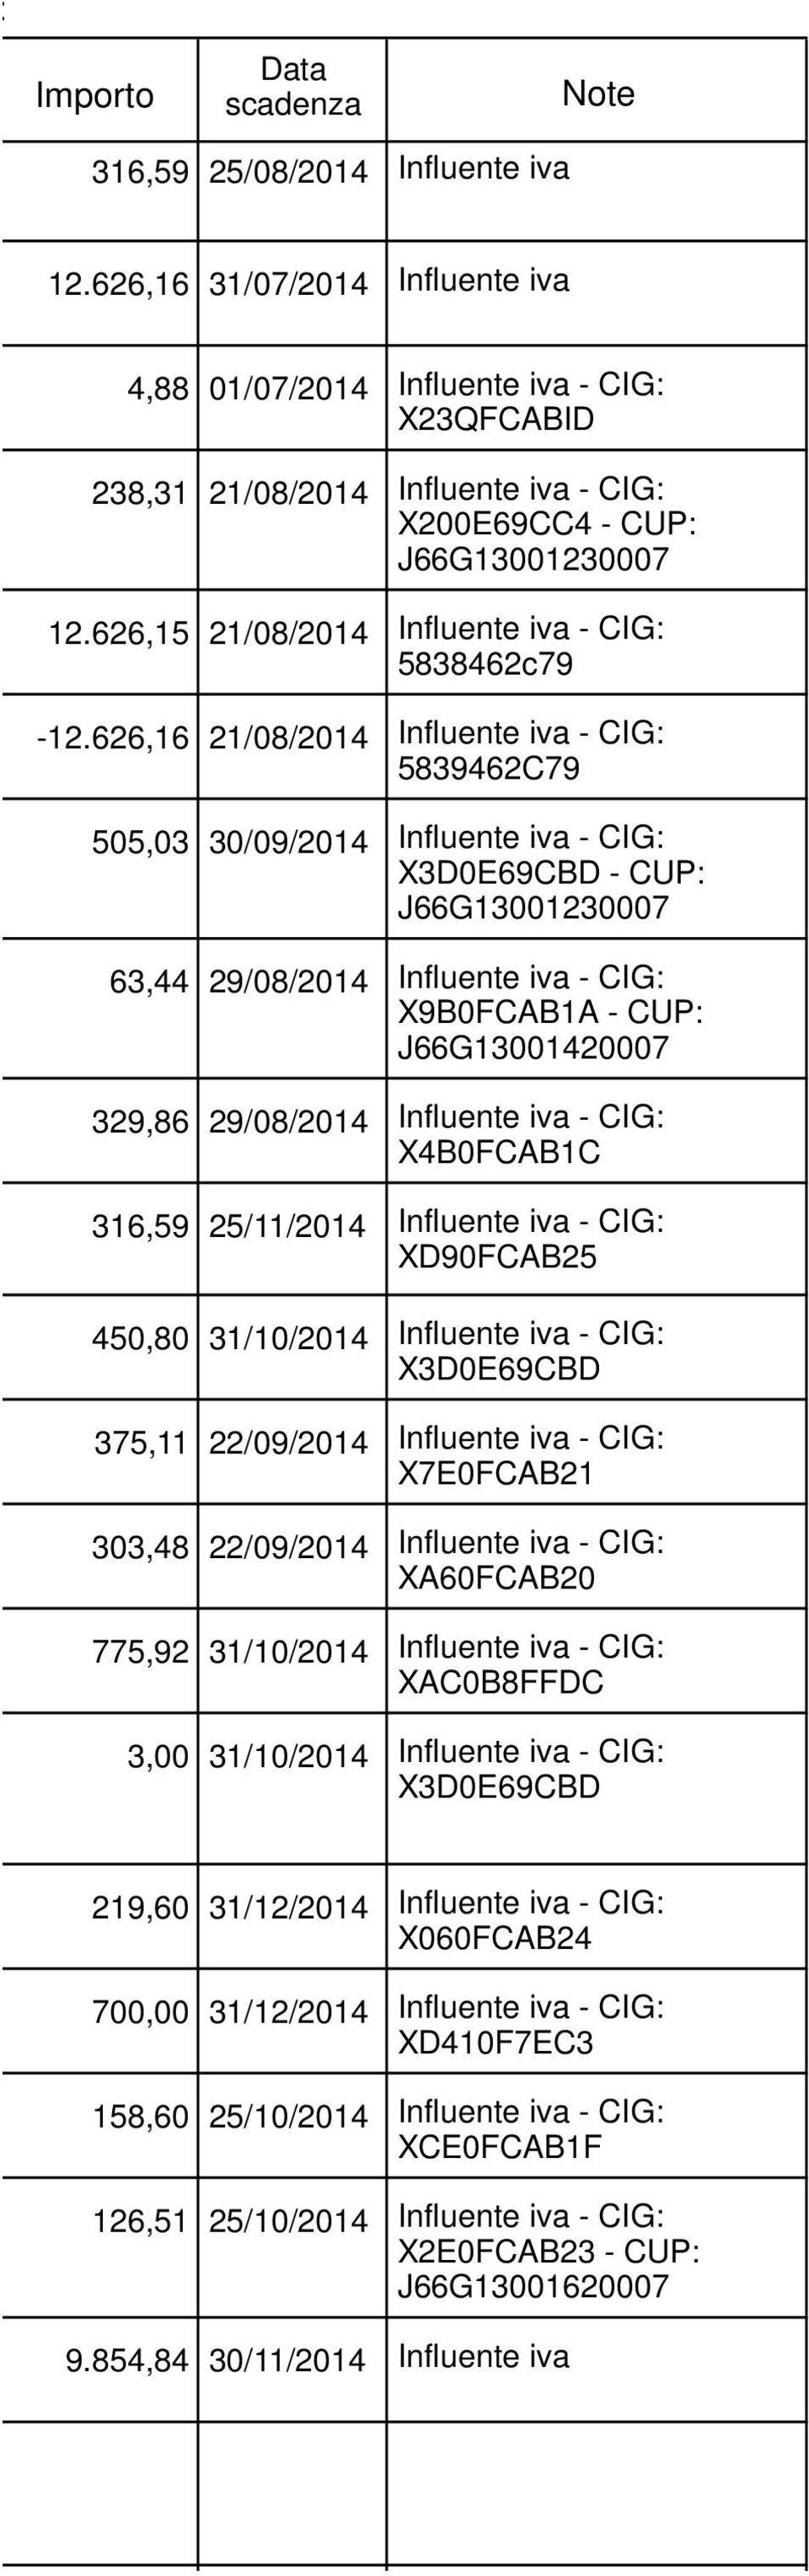 626,15 21/08/2014 Influente iva - CIG: 5838462c79-12.